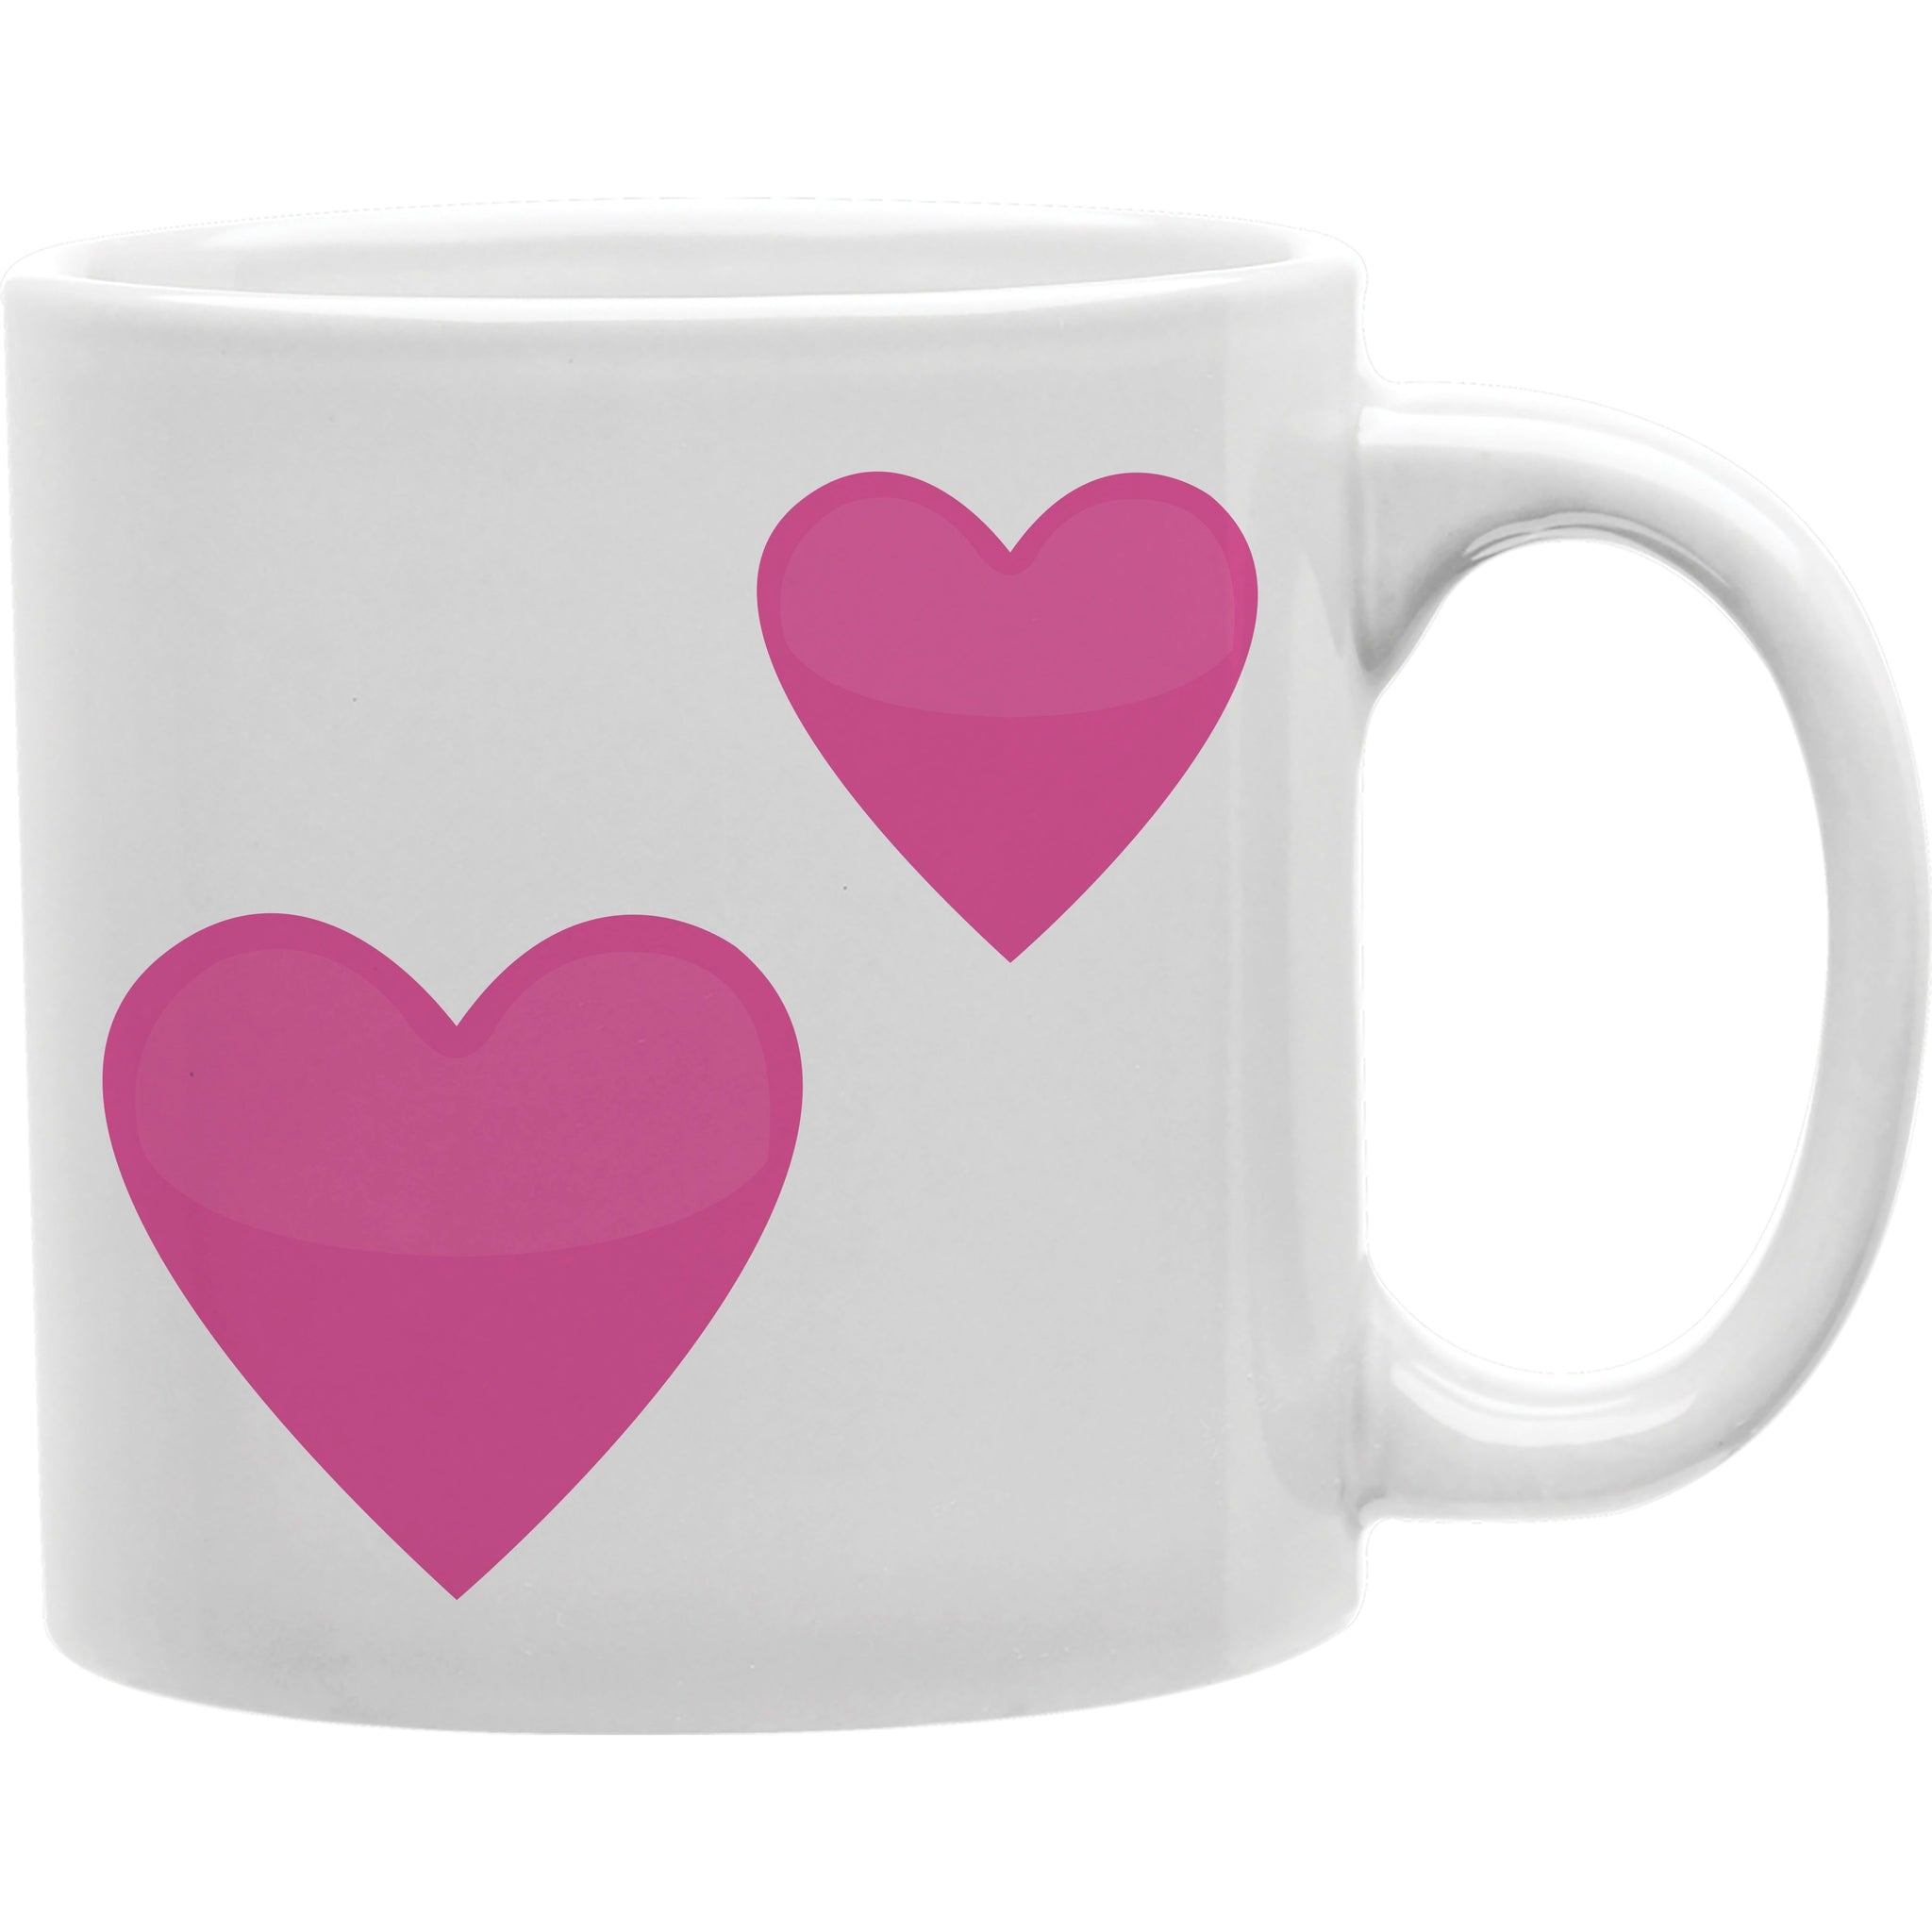 2 Hearts Emoji Coffee and Tea Ceramic Mug 11oz